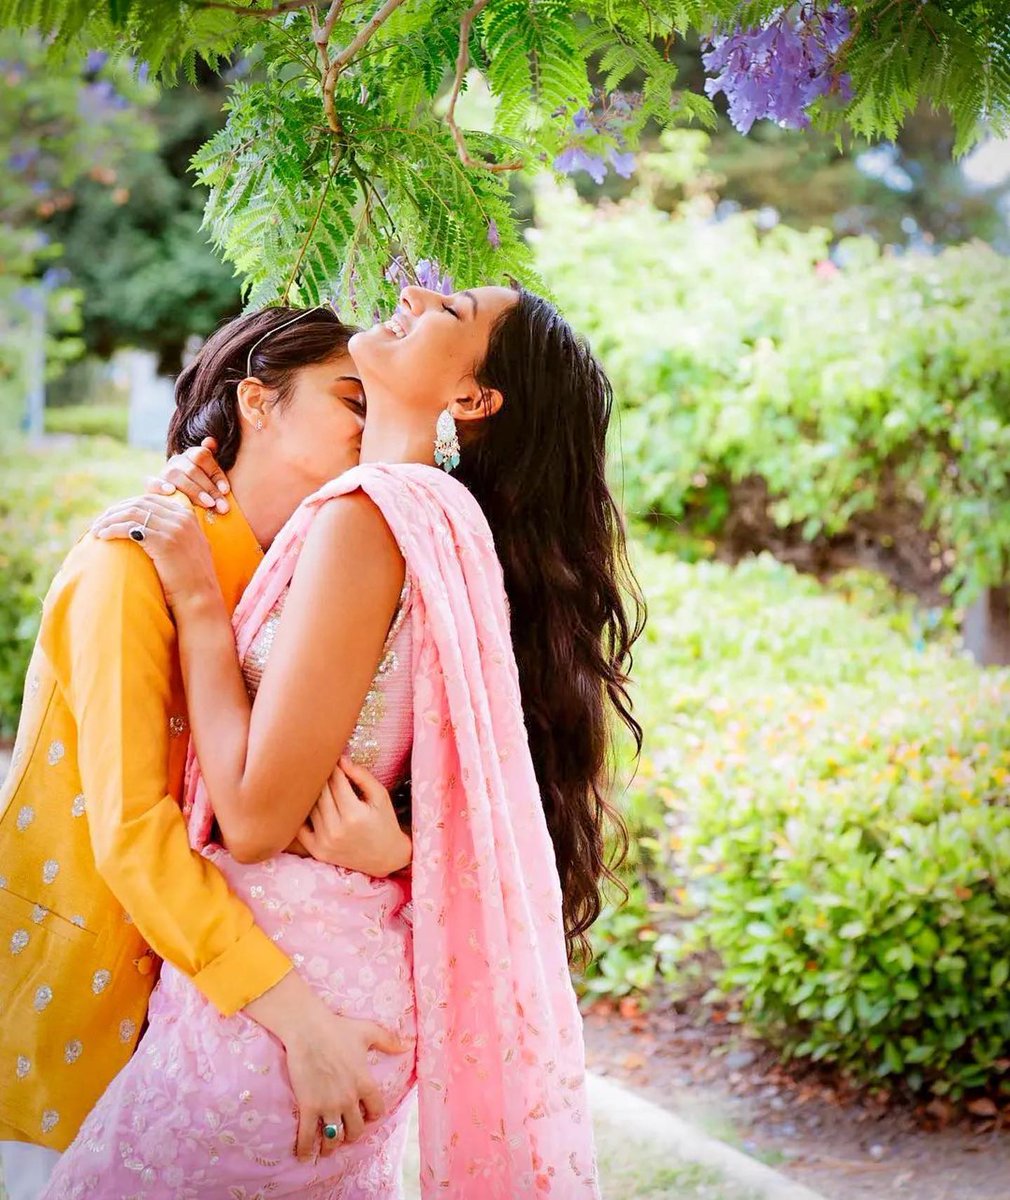 Couple: Sufi and Anjali (@sufi_anjali__) ❤️🌈

#lesbian🏳️‍🌈 #lesbianvisibility #lesbianfamily #wifeandwife #lesgirls #tomboyfemme #femmecouple #lesbianqoutes #lesbianpositivity #sufisoul #indianlesbian #indianlovers #lgbtqfamily #lesbianrelationship #lesbiancouplegoals